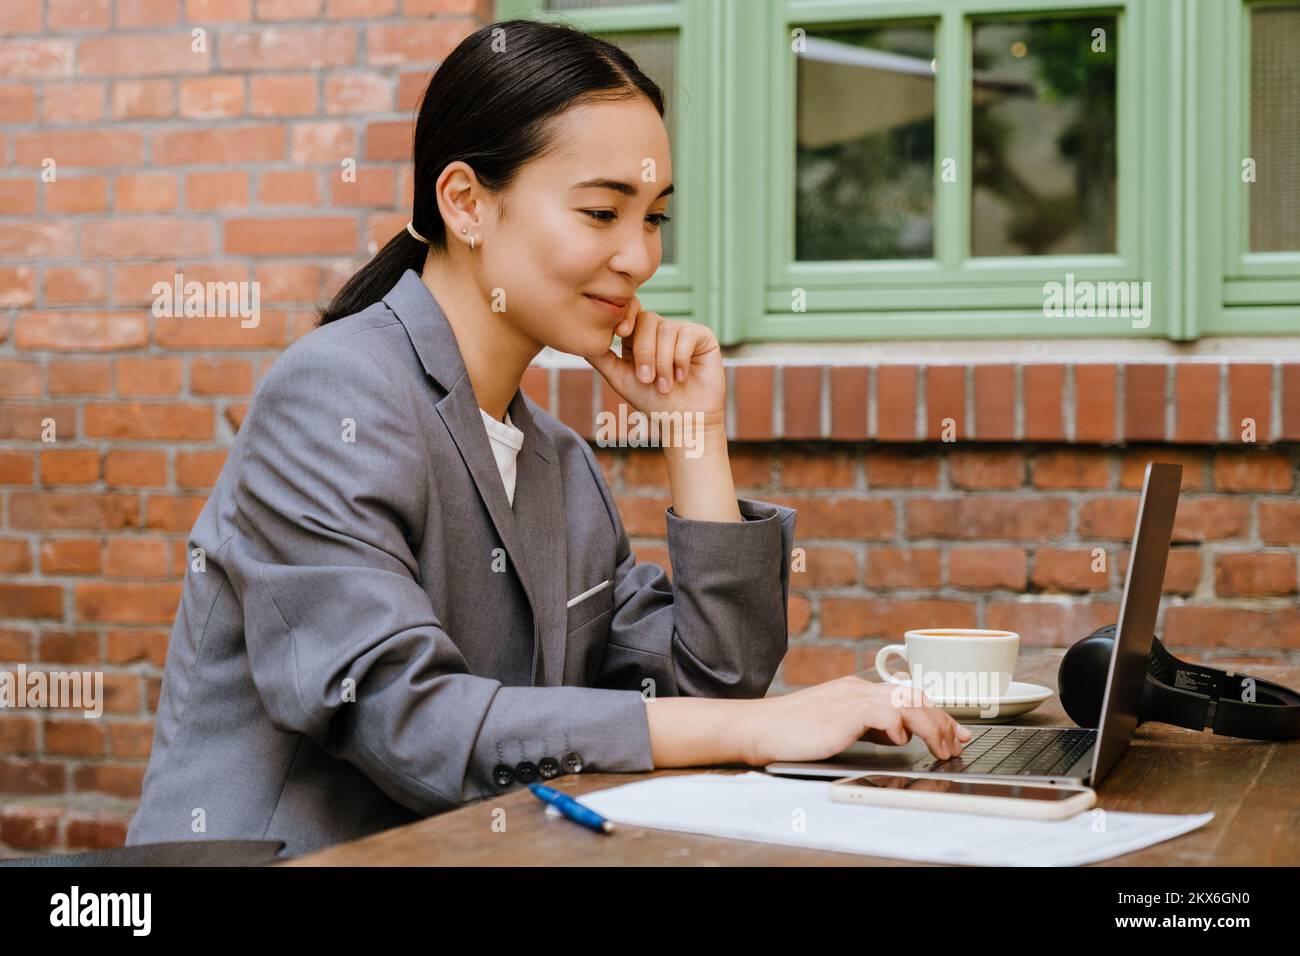 Mujer joven asiática que trabaja con un ordenador portátil mientras está sentada en un café al aire libre Foto de stock